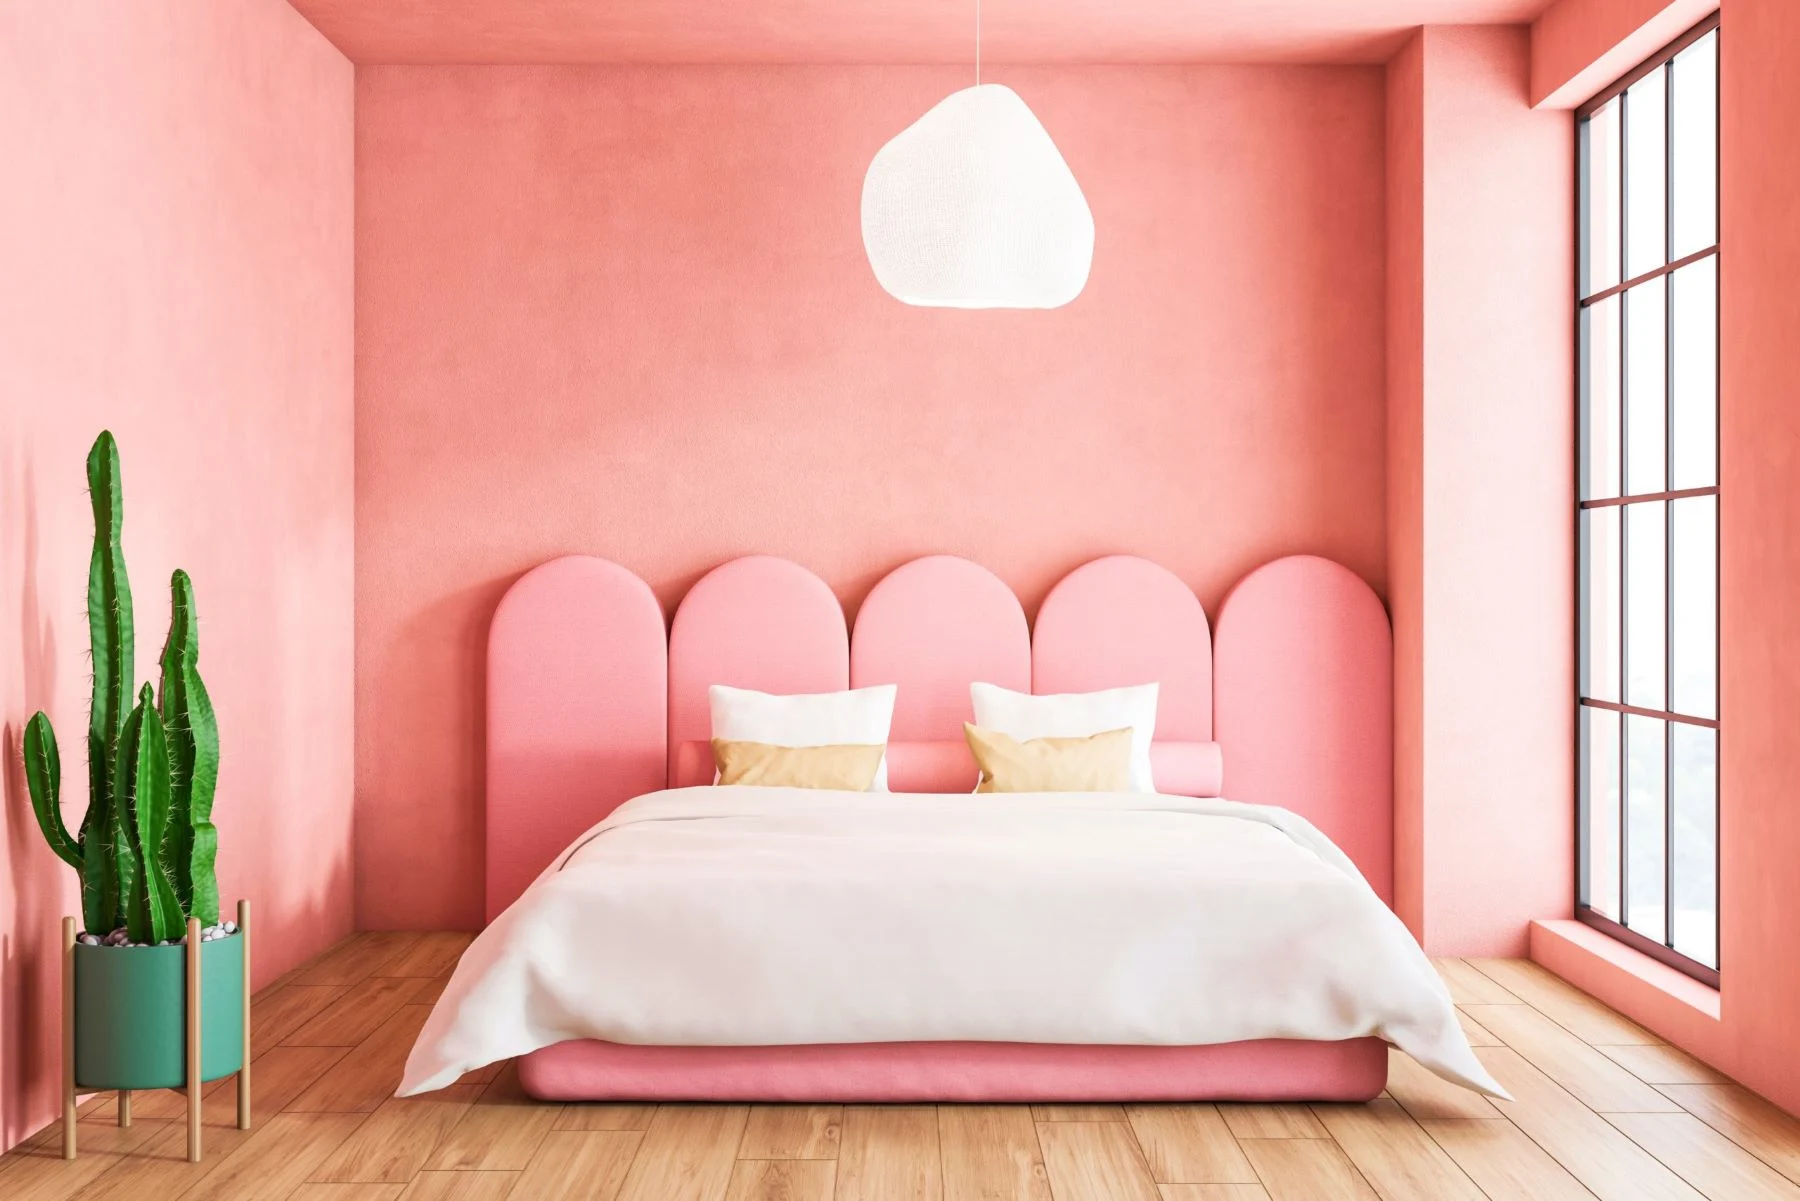 Lựa chọn chăn ga cho phòng ngủ màu hồng